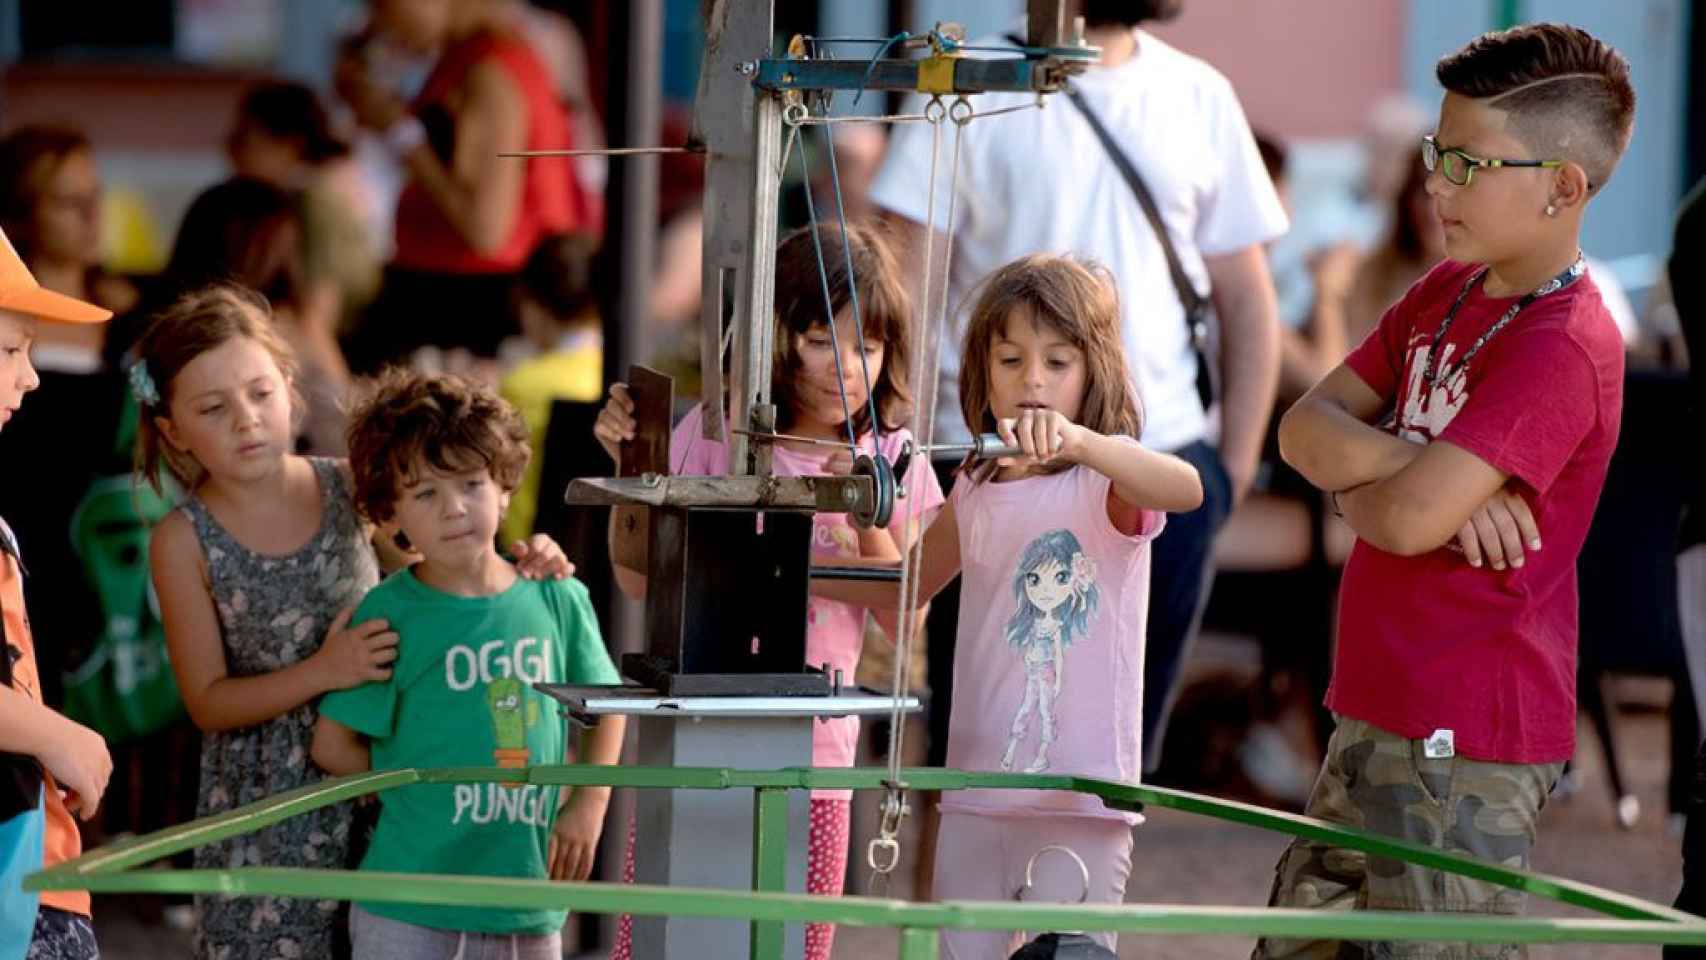 Niños jugando con los juegos reciclados de Guixot de 8 en una feria o mercado